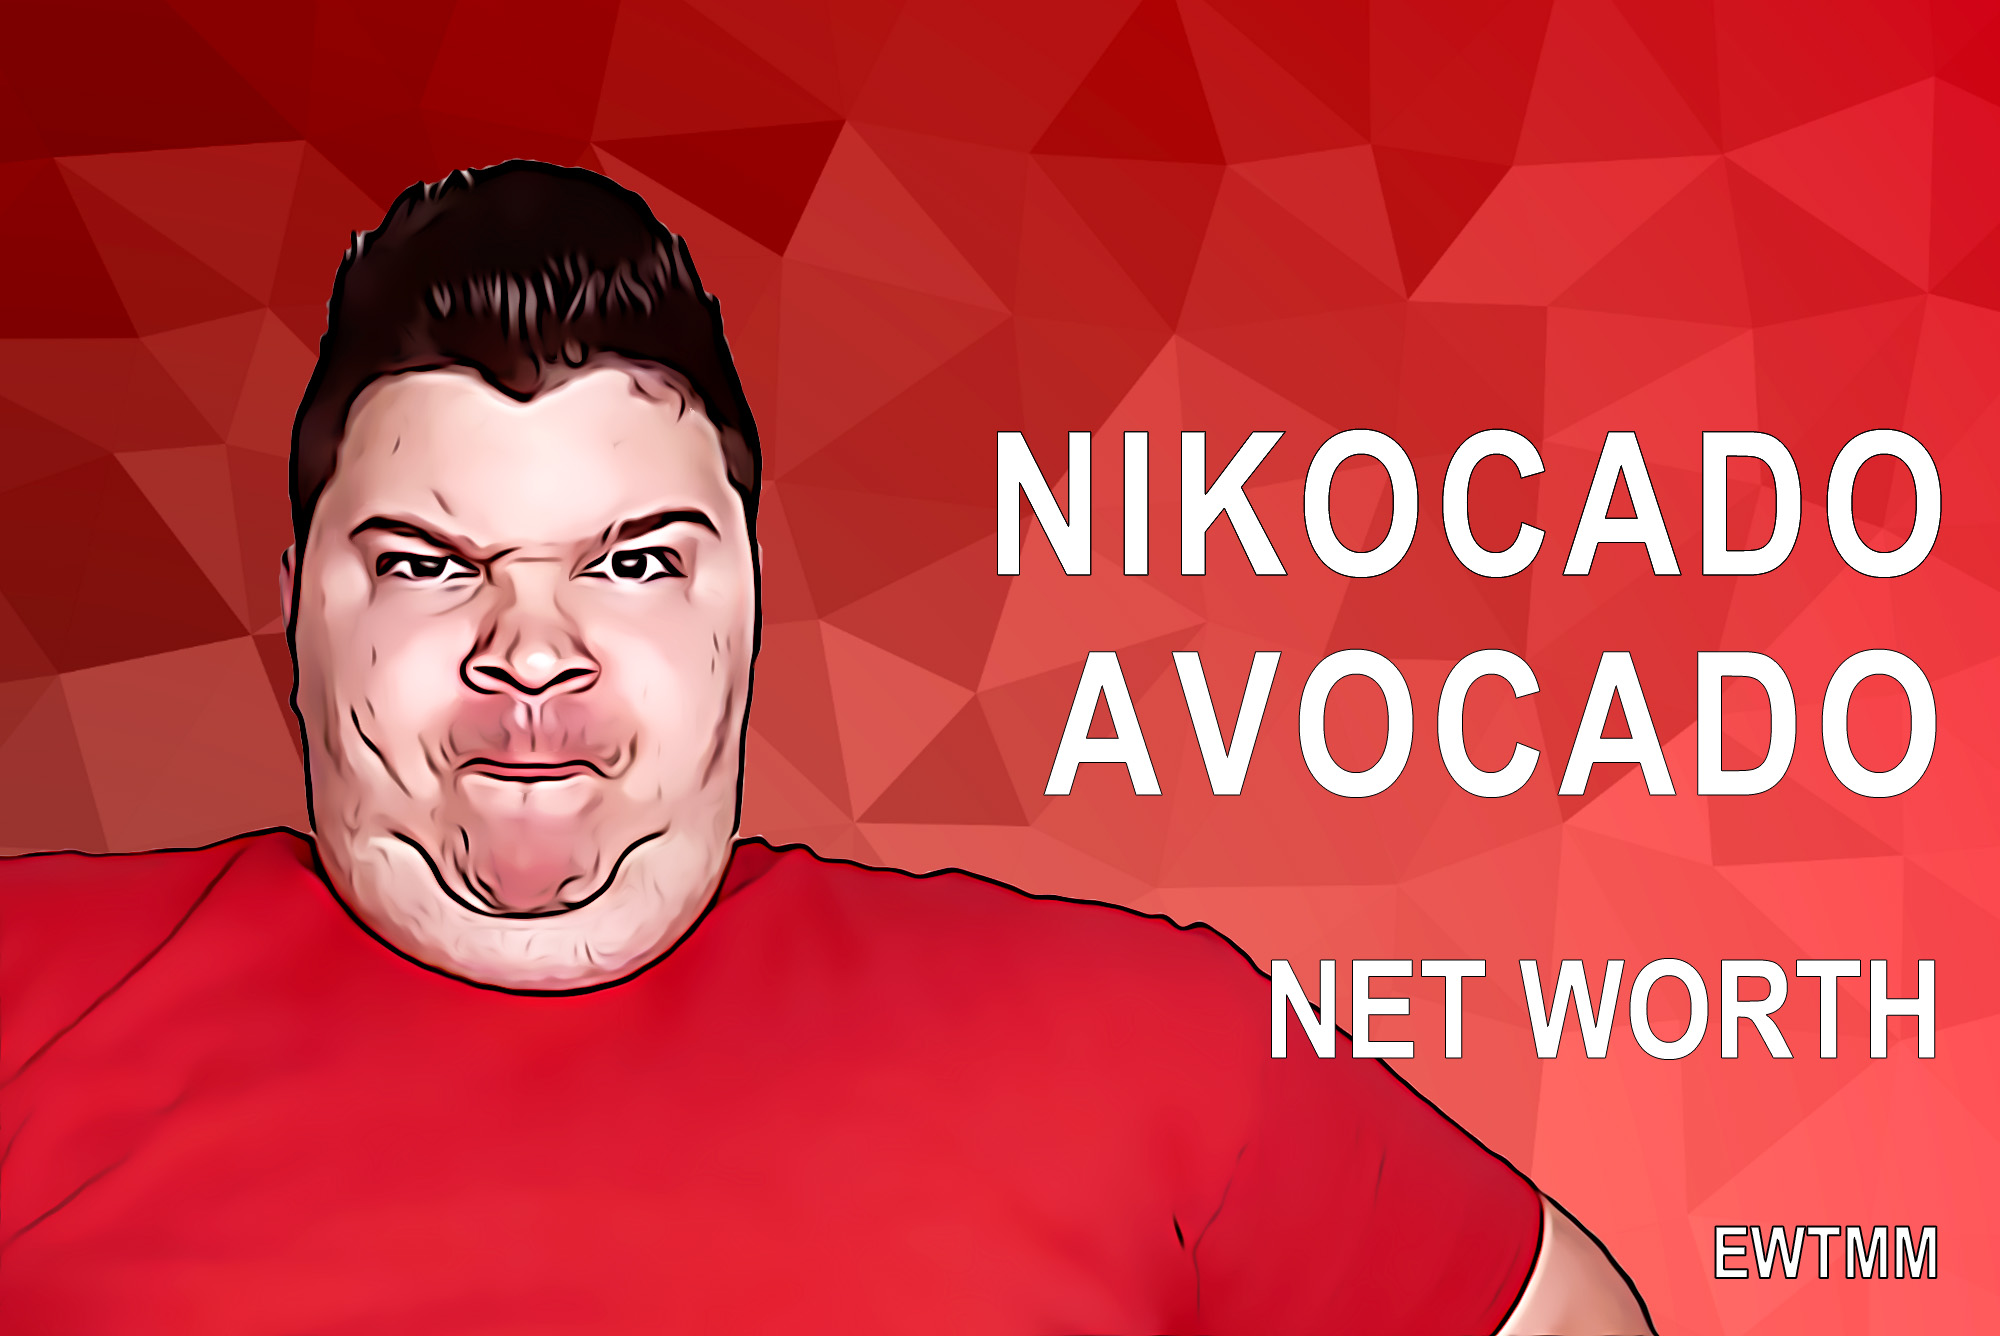 Nikocado Avocado net worth